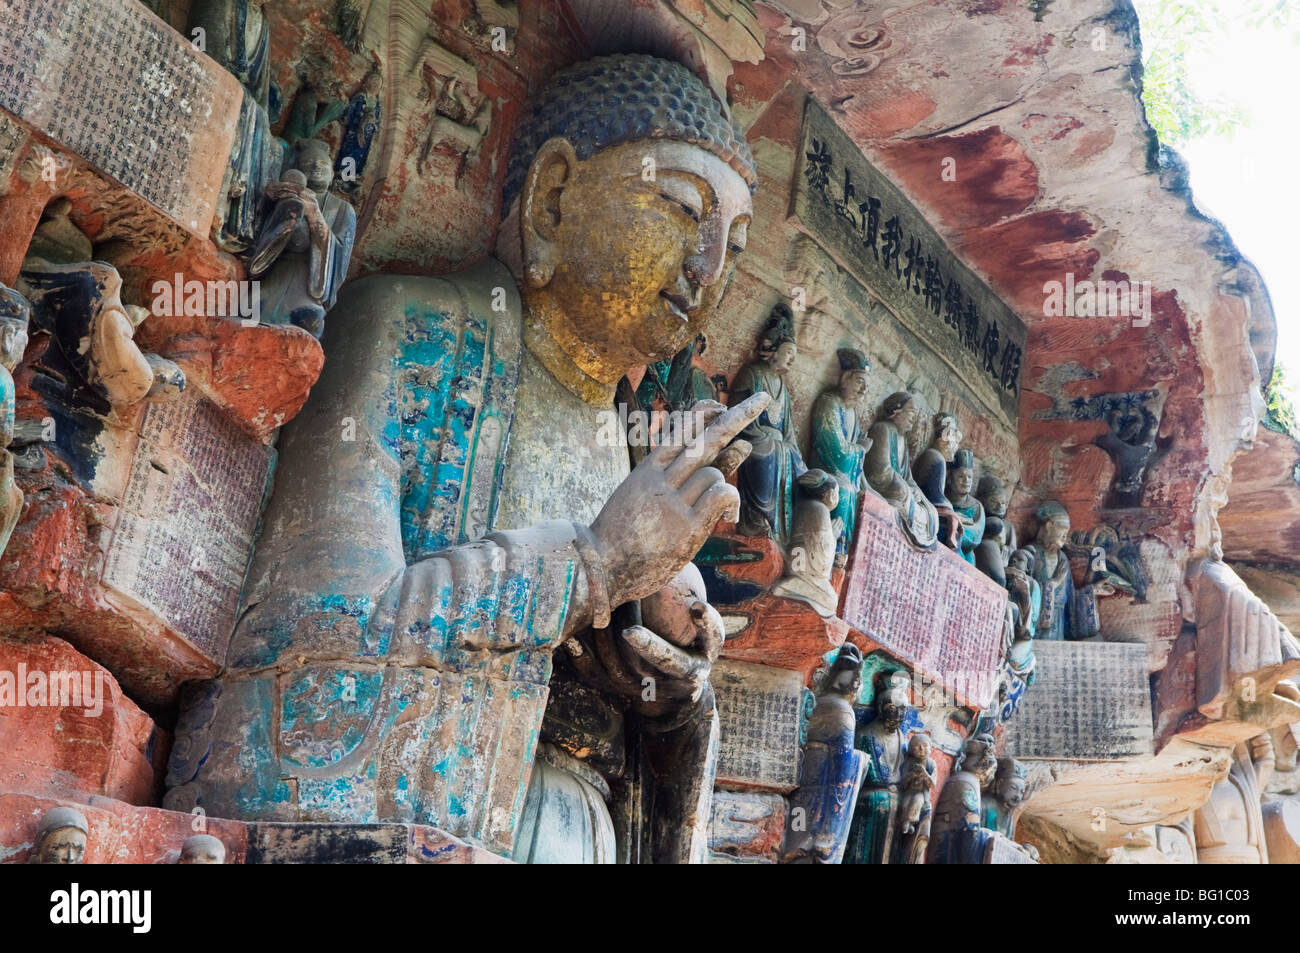 Bouddhiste de Dazu rock sculptures, Site du patrimoine mondial de l'UNESCO, la municipalité de Chongqing, Chine, Asie Banque D'Images